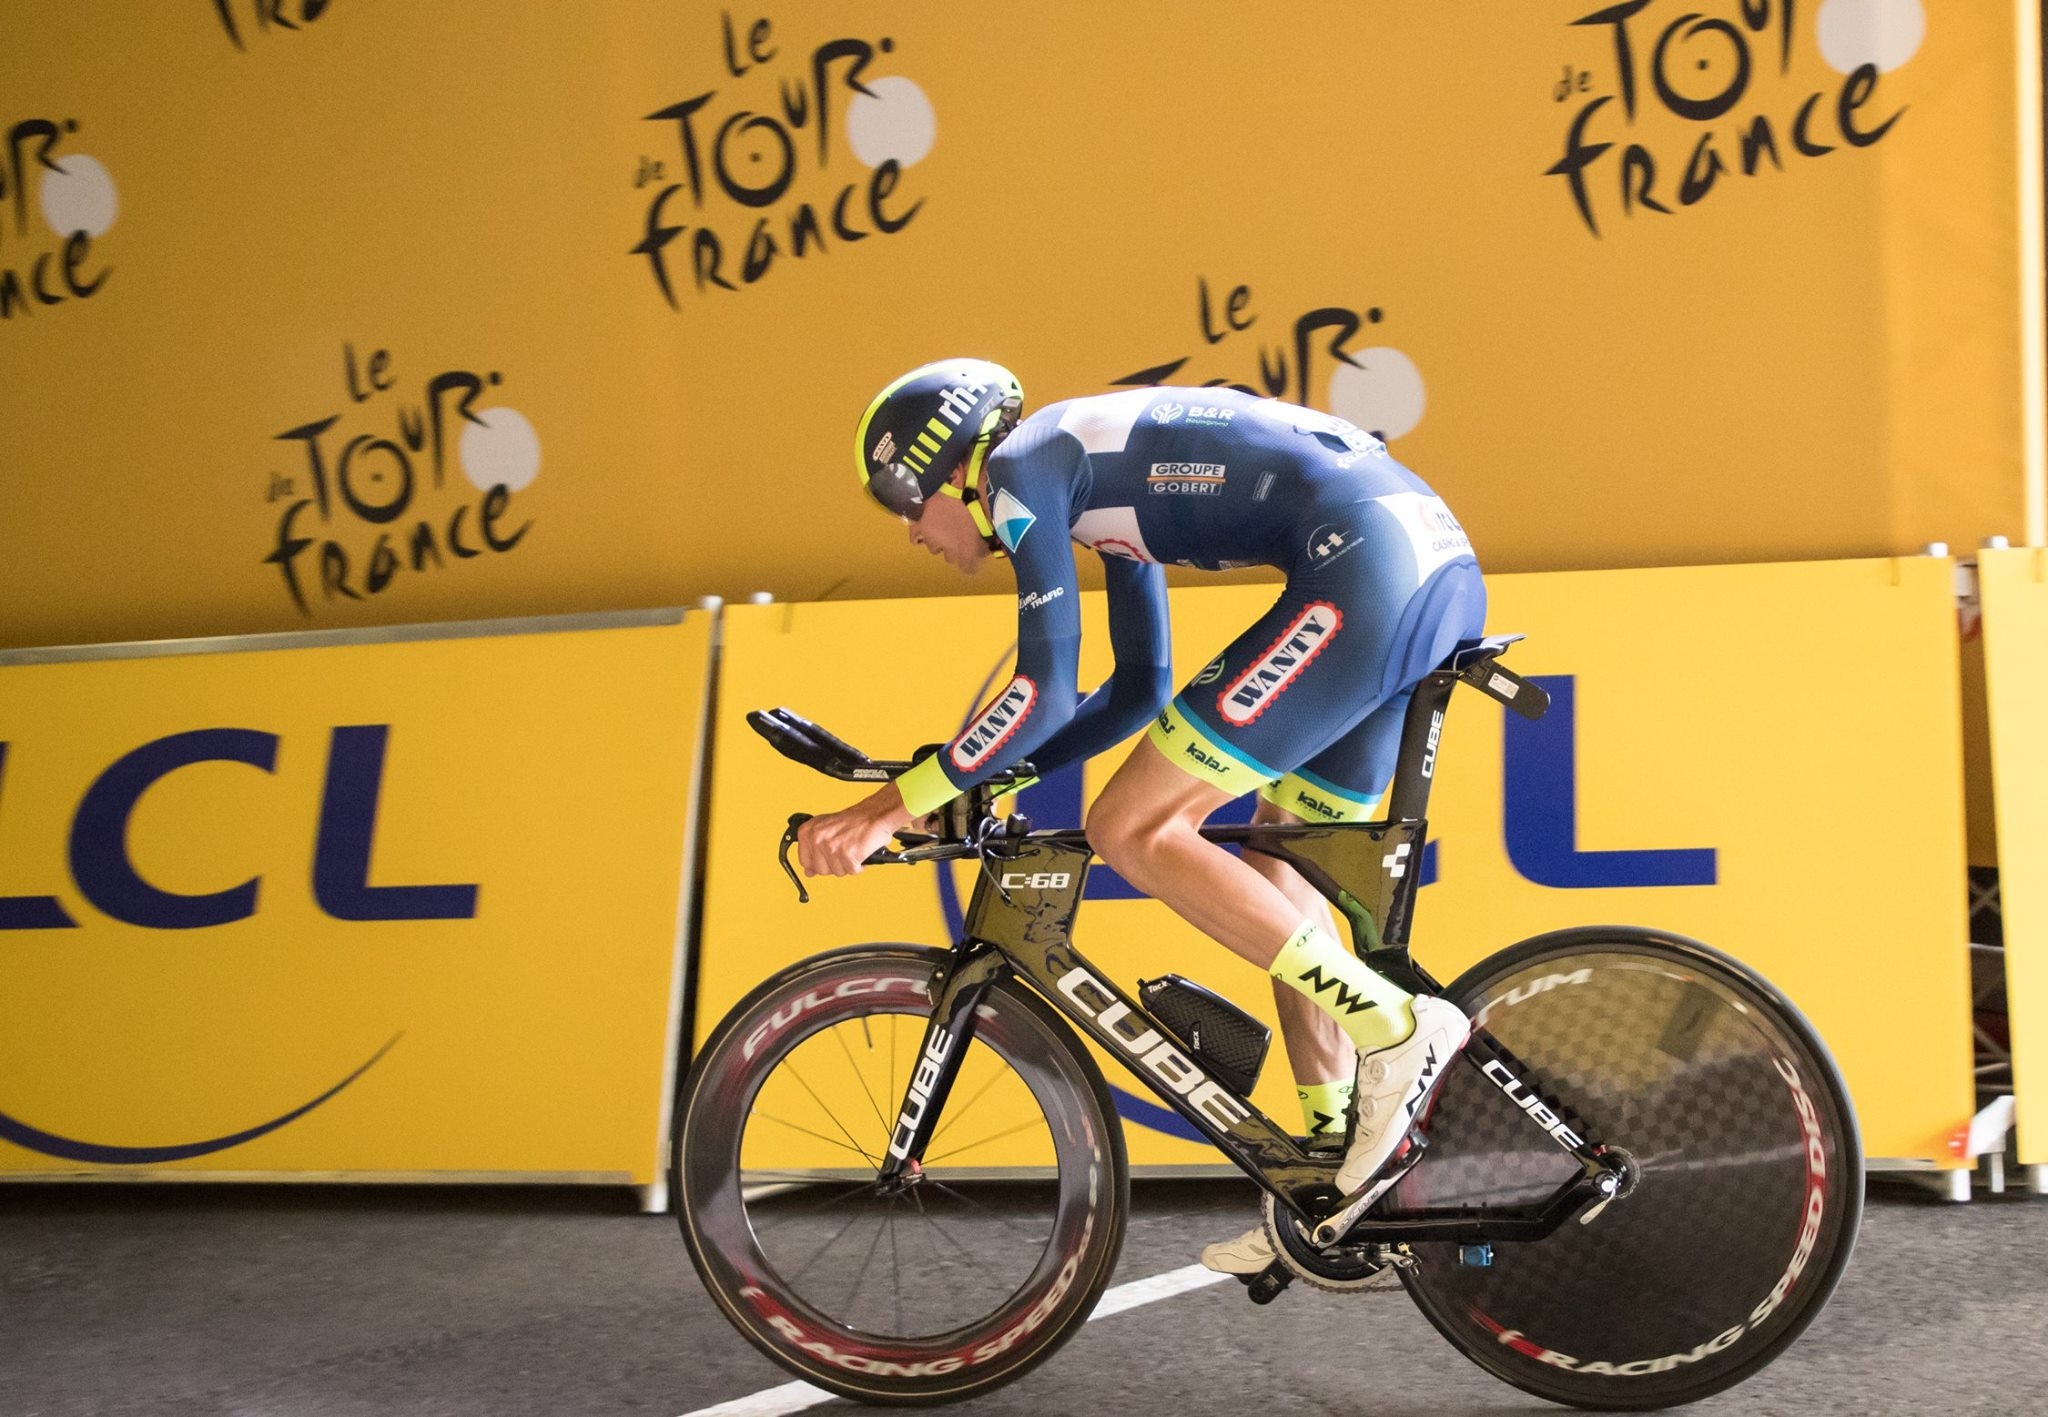 Тур дьо Франс се завръща... виртуално